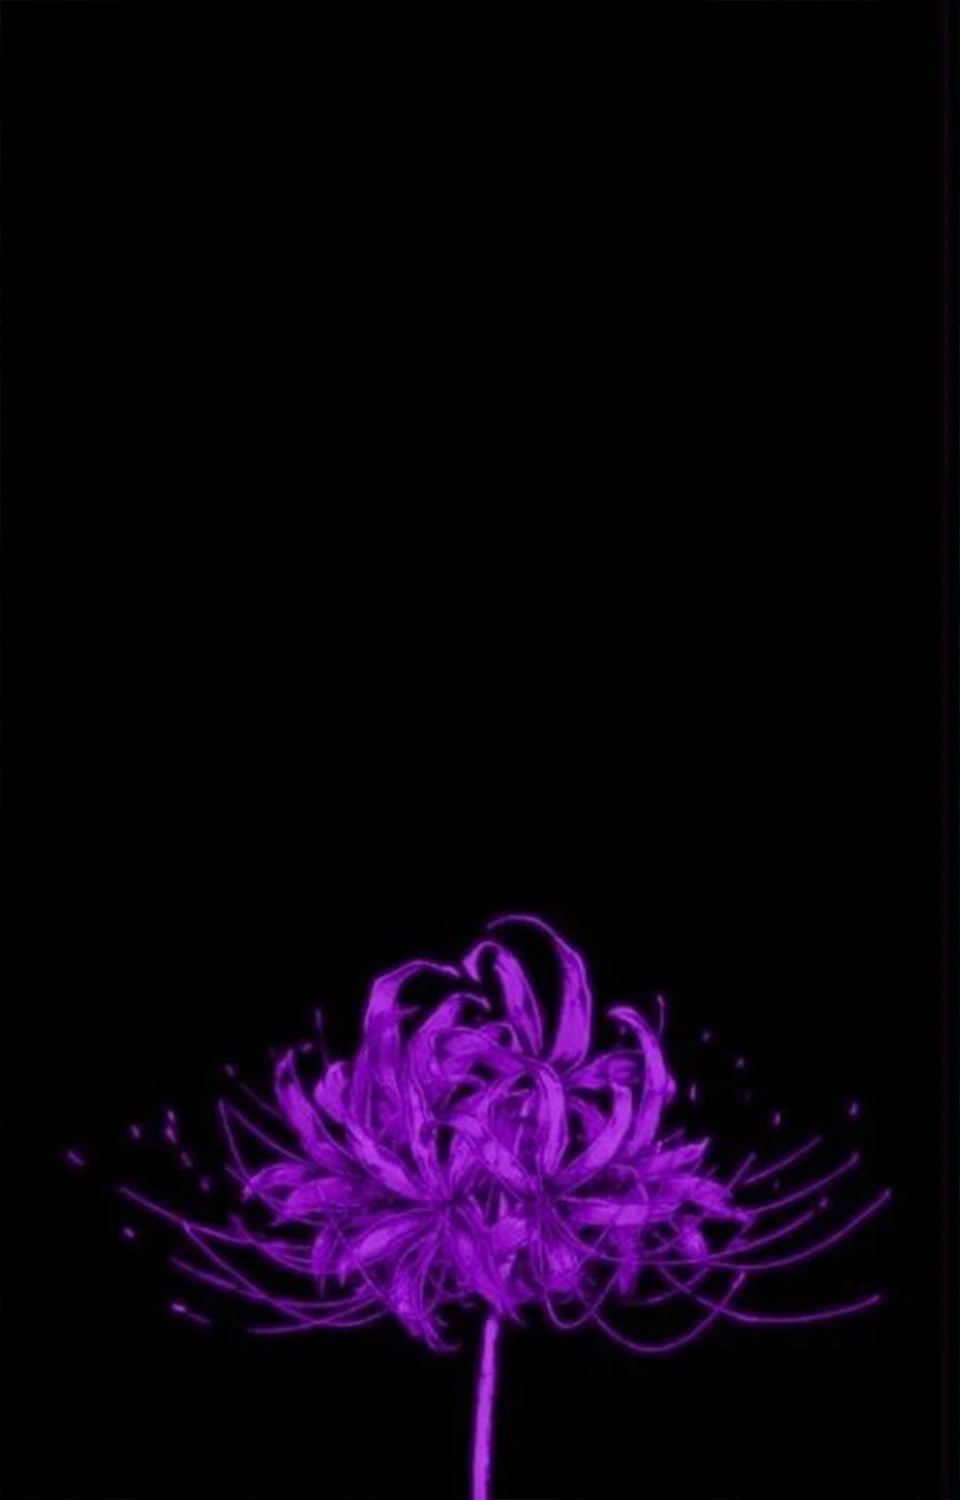  Hình ảnh nền 1 nhành hoa bỉ ngạn tím rất đẹp cho tới năng lượng điện thoại